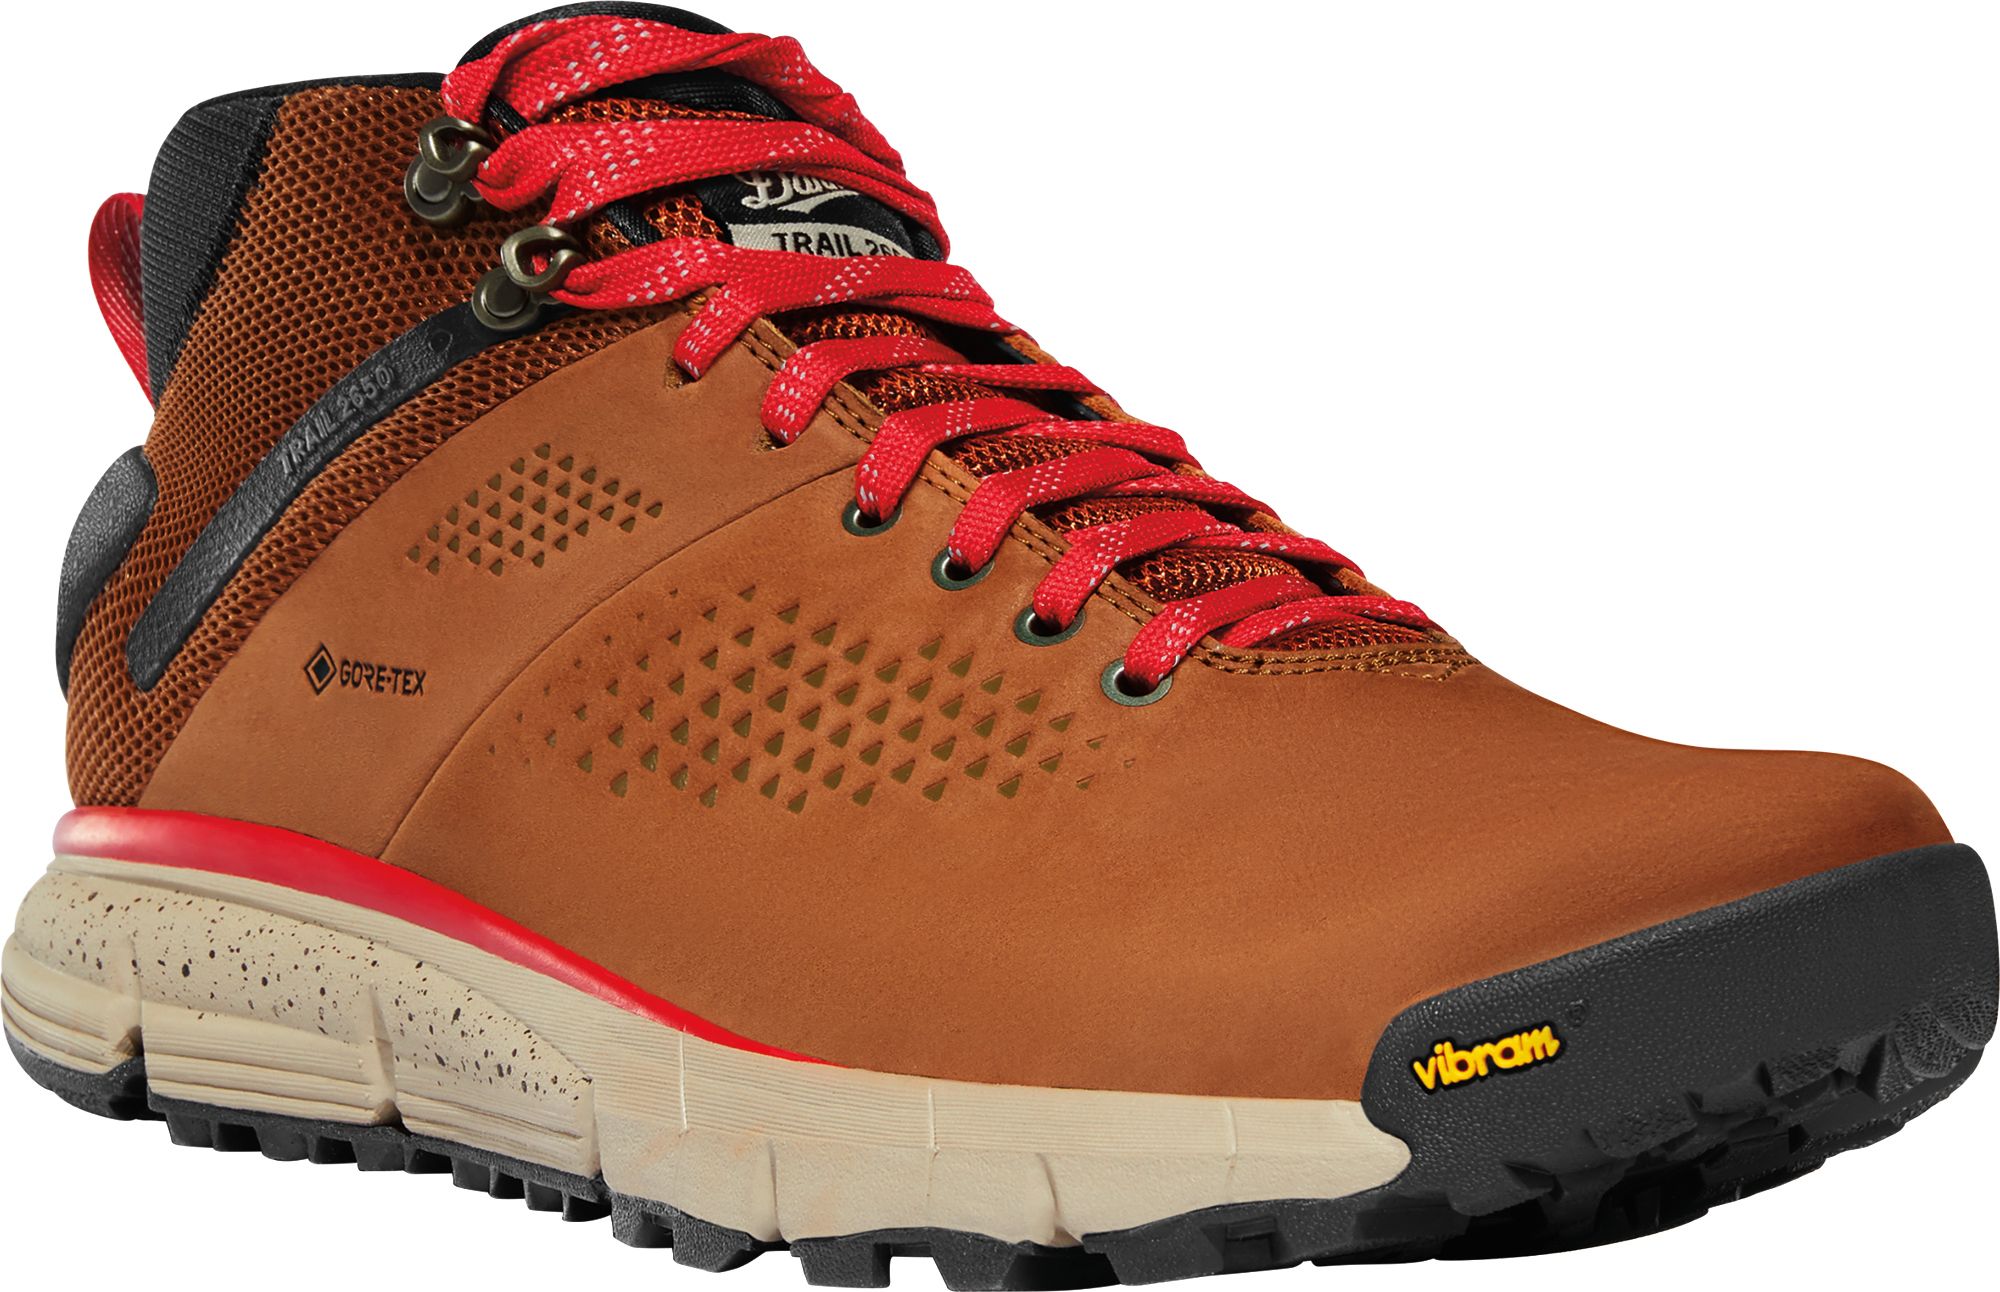 Danner Men's Trail 2650 GTX Boots